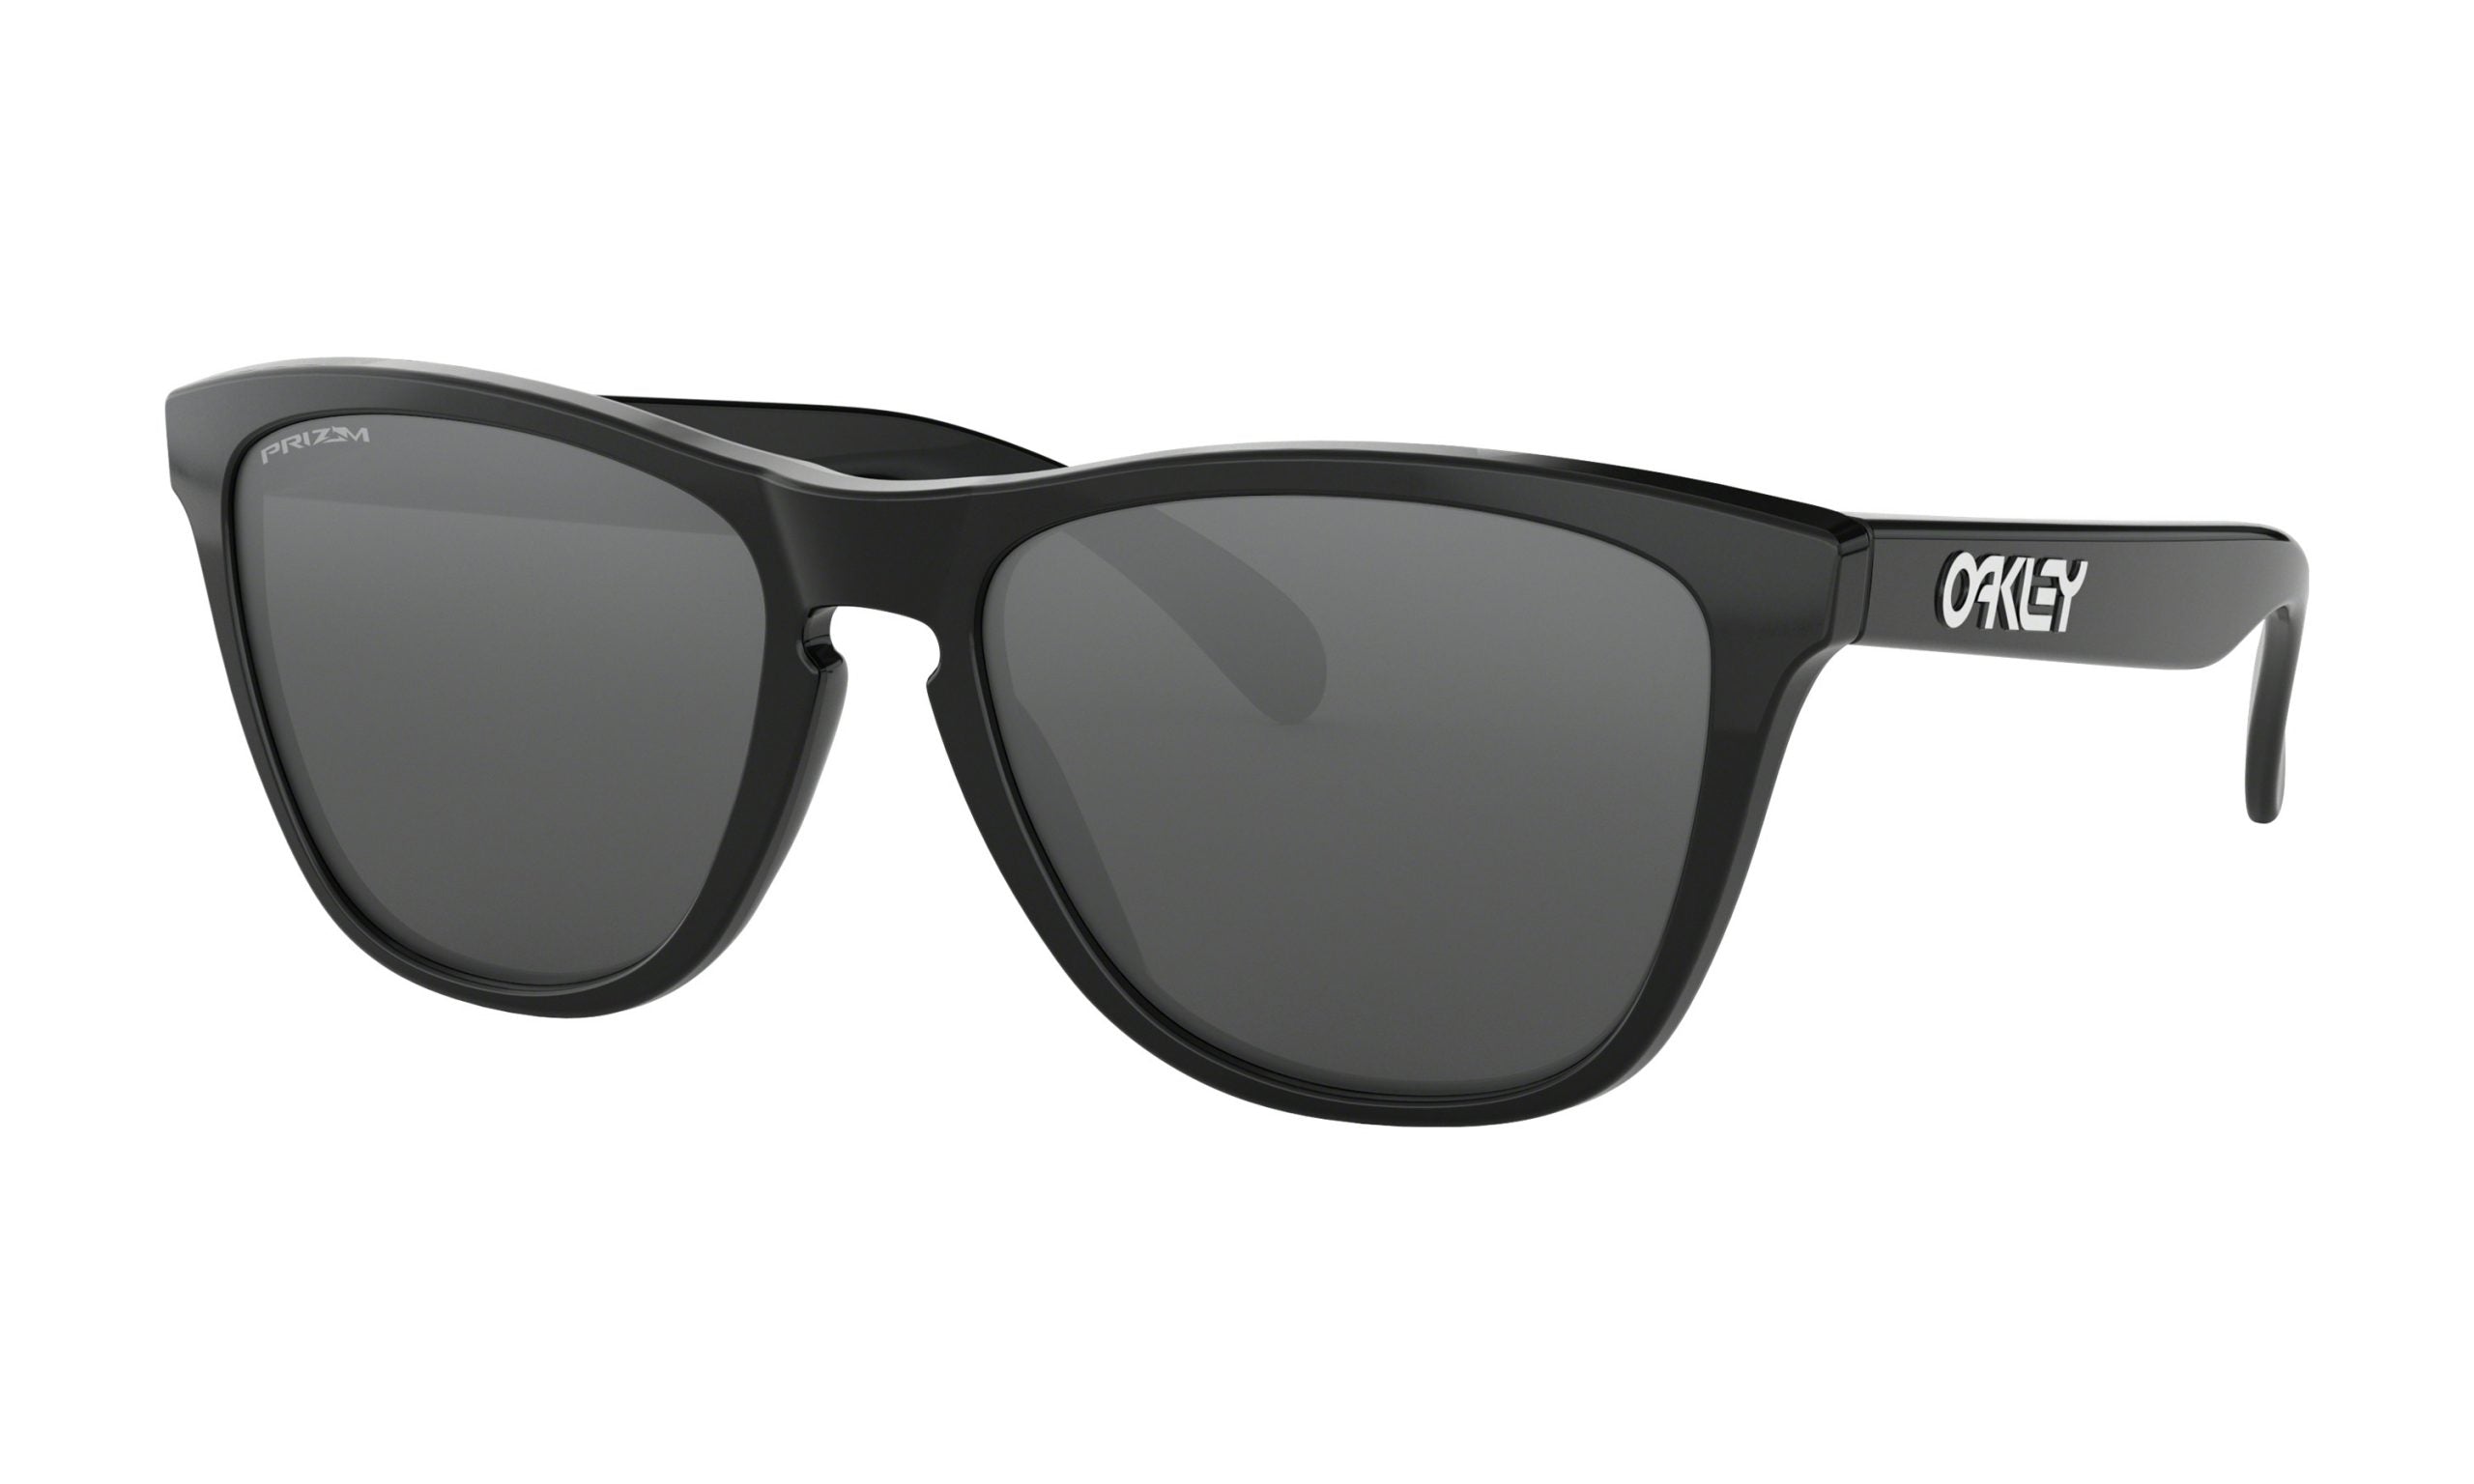 OAKLEY Frogskins Sunglasses - Polished Black - Prizm Black Lens